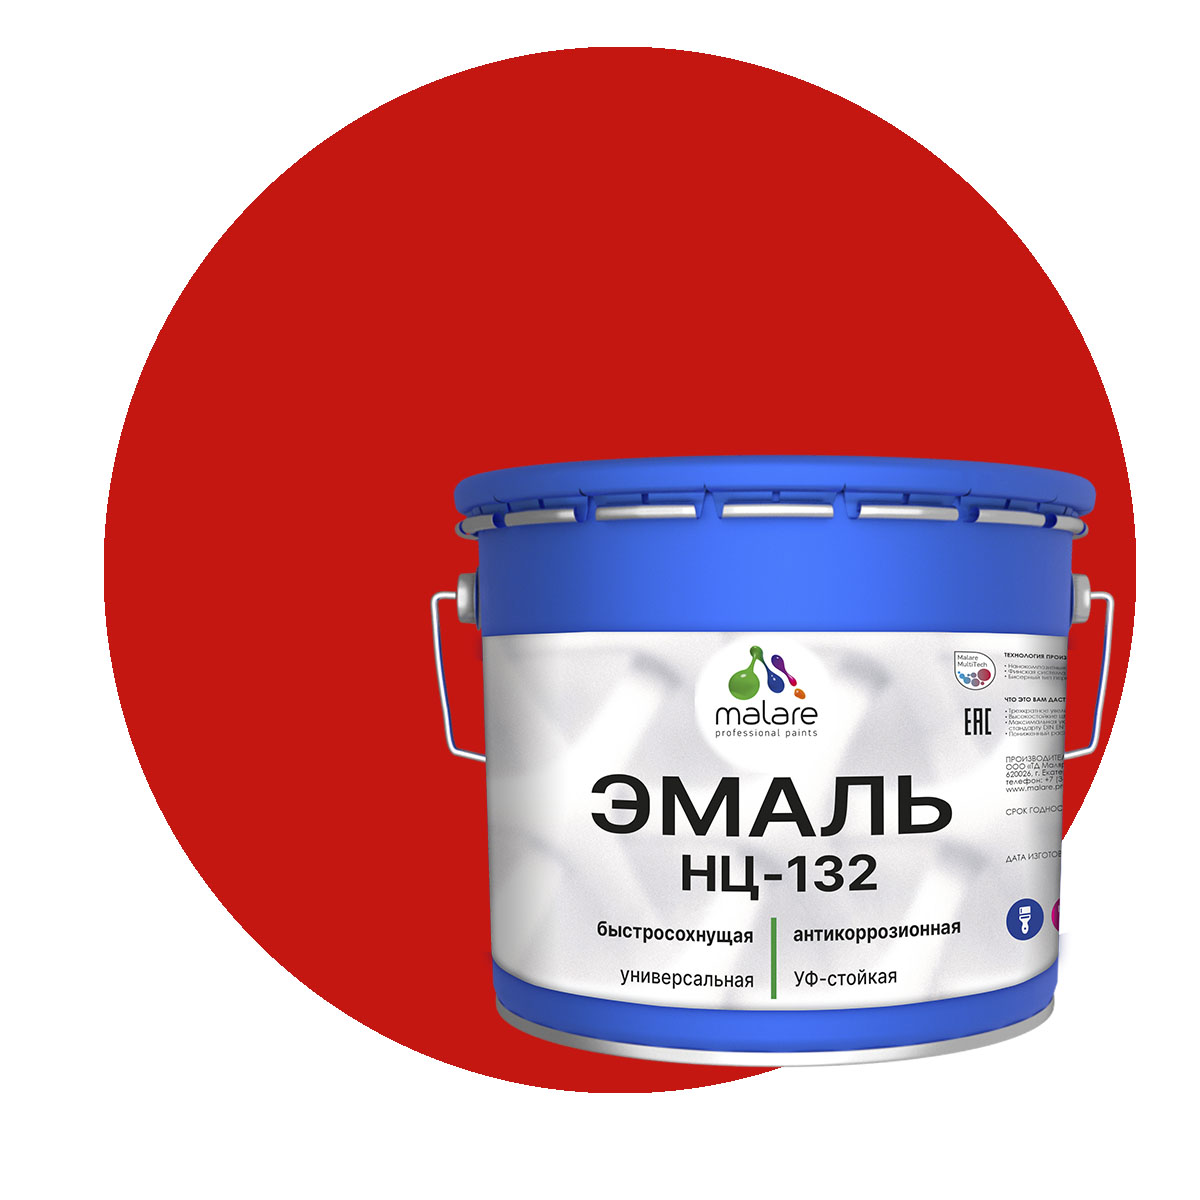 Эмаль Malare НЦ-132 универсальная, RAL 3020, красный, глянцевая, 10 кг. туалет средний с сеткой 36 х 26 х 6 5 см красный